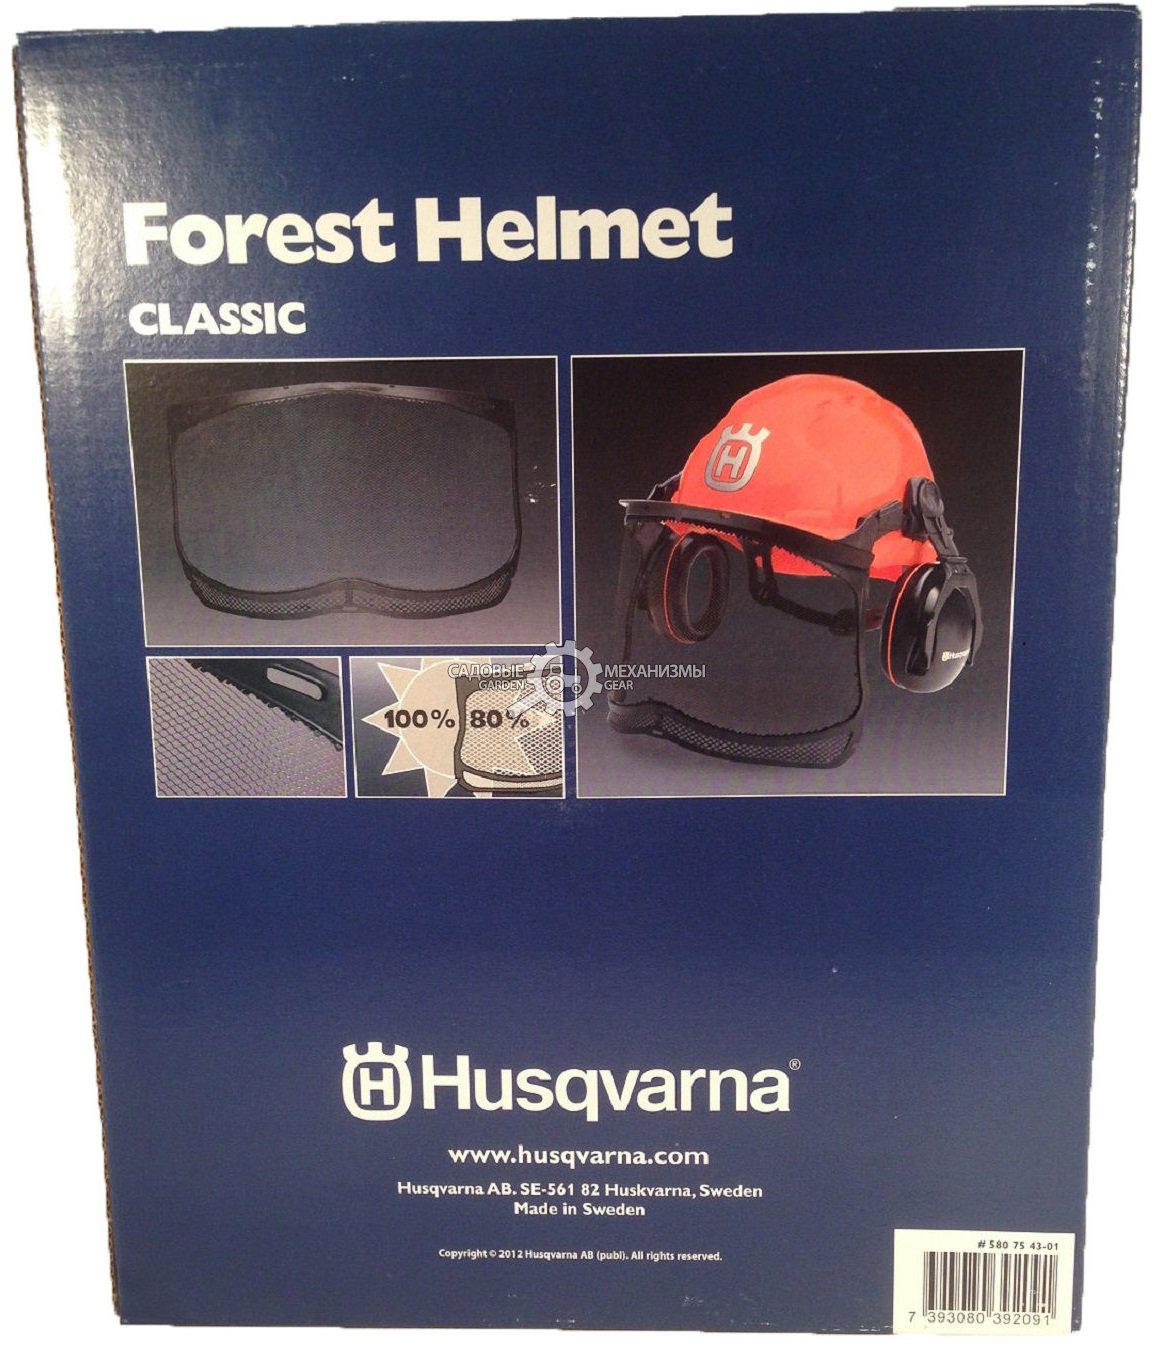 Шлем защитный Husqvarna Classic в комплекте защитная сетка-маска для лица, наушники, солнцезащитный козырек